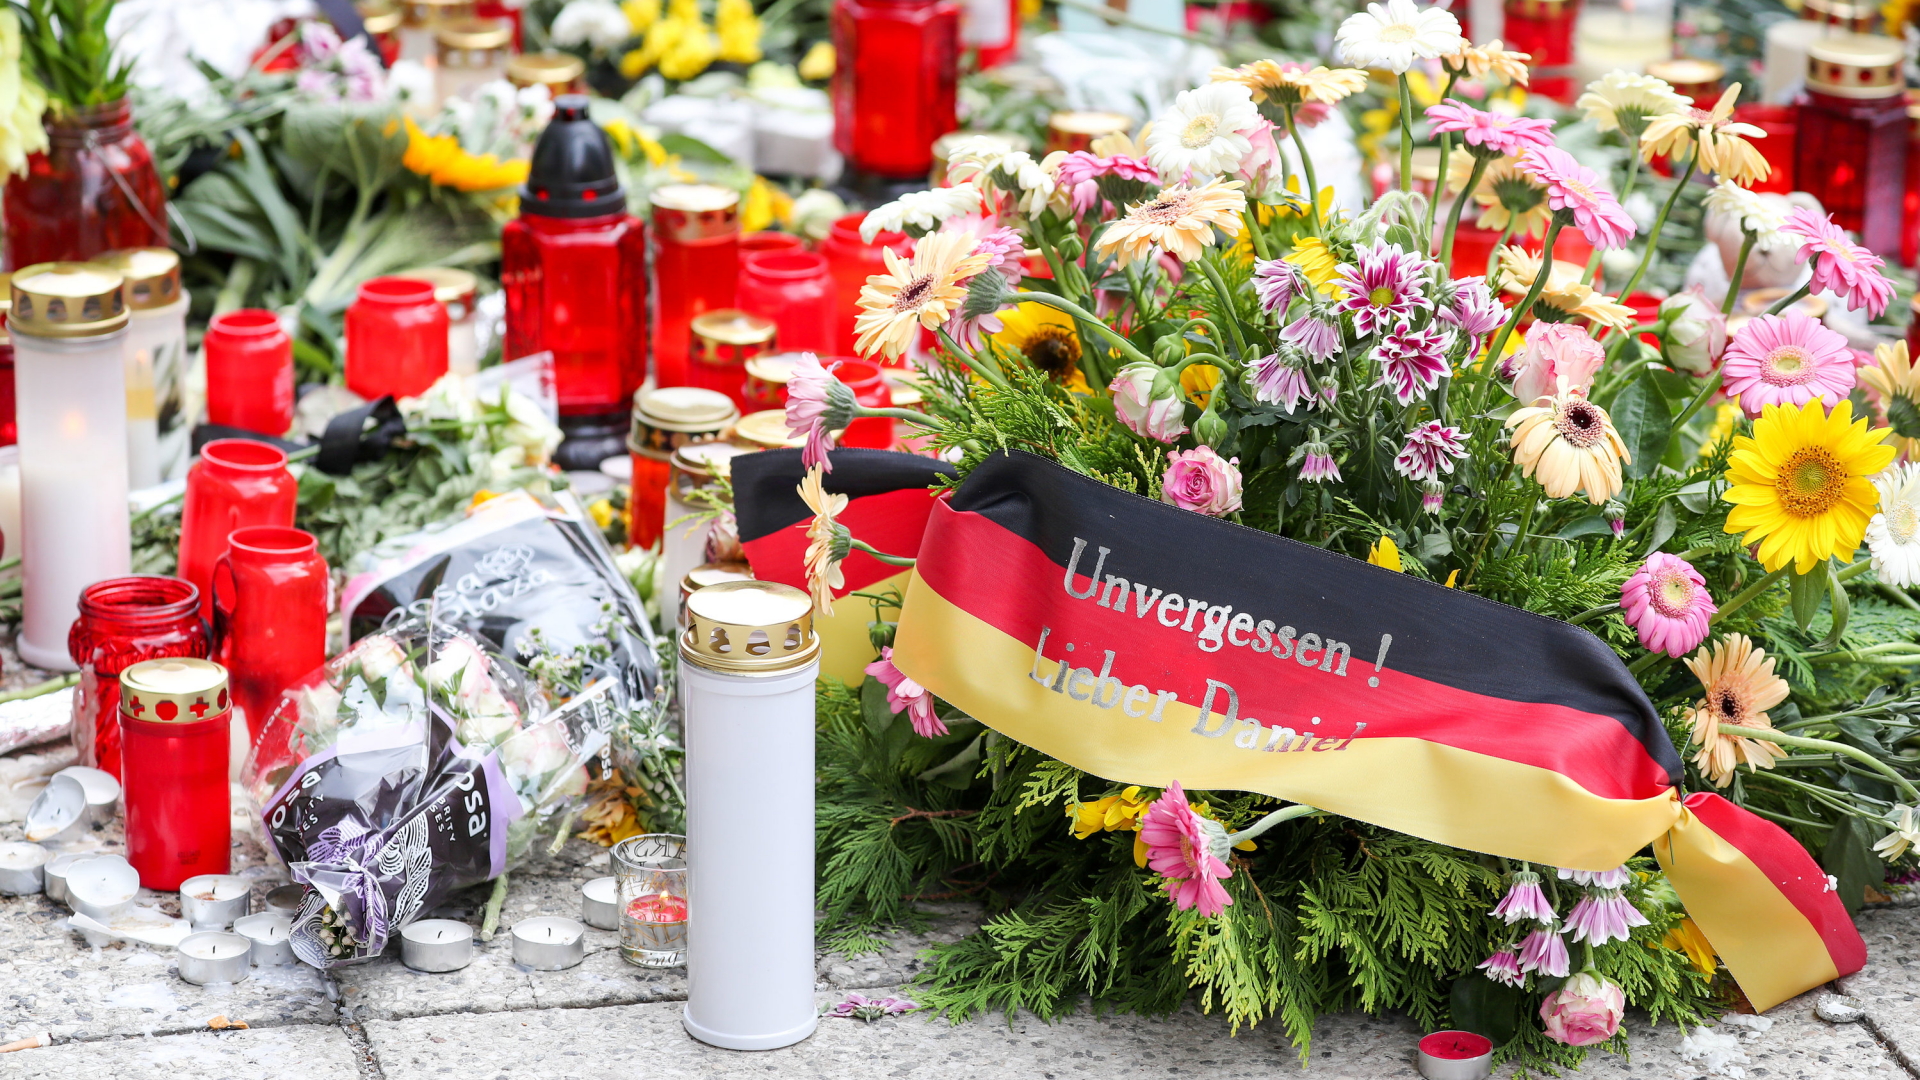 Kerzen und Blumen liegen auf einer Straße in Chemnitz, auf einer schwarz-rot-goldenen Binde steht: "Unvergessen! Lieber Daniel".